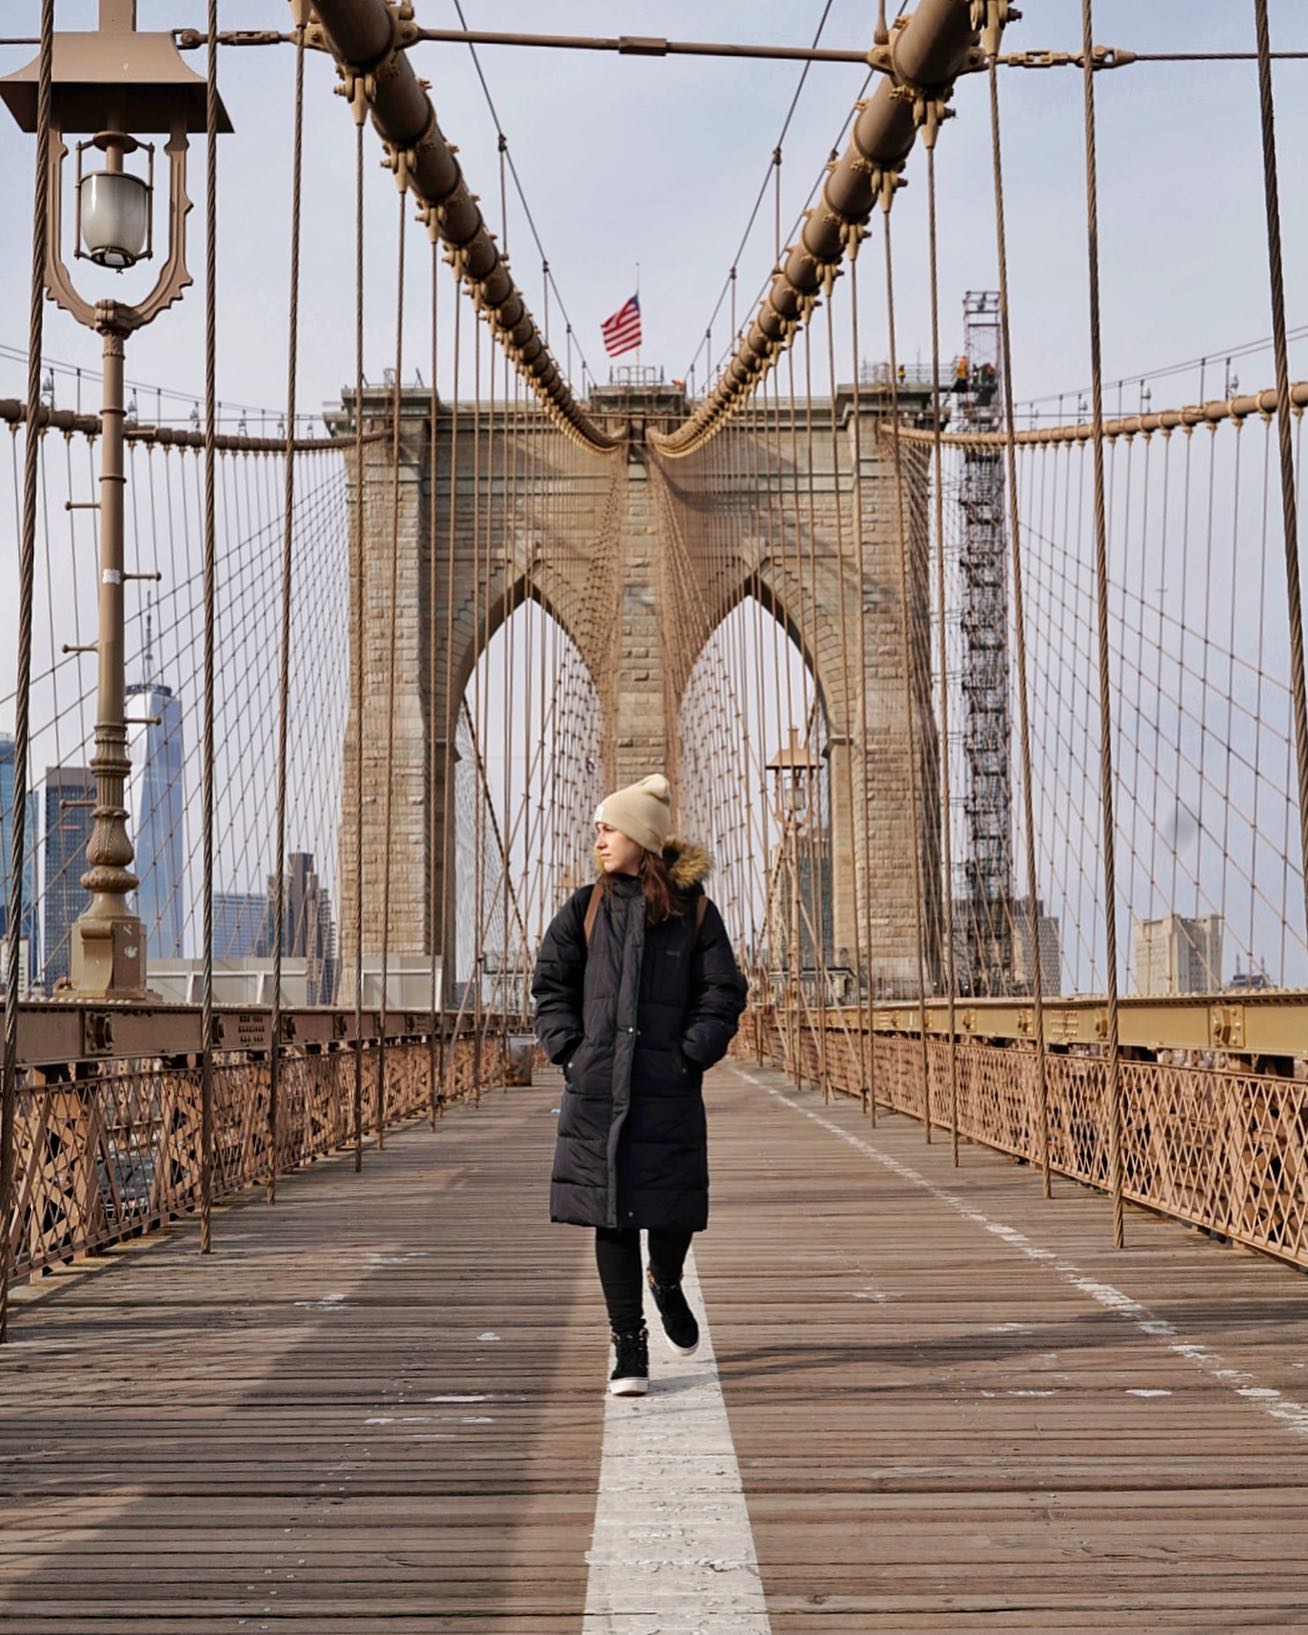 .
No podíamos irnos de Nueva York sin cruzar andando el puente de Brooklyn🇺🇸
.
#viajesglobetrotter #ny #nyc #brooklyn #mondofotodelmes #travelblog #travelblogger #iamtb #newyork #viajandoconcivitatis